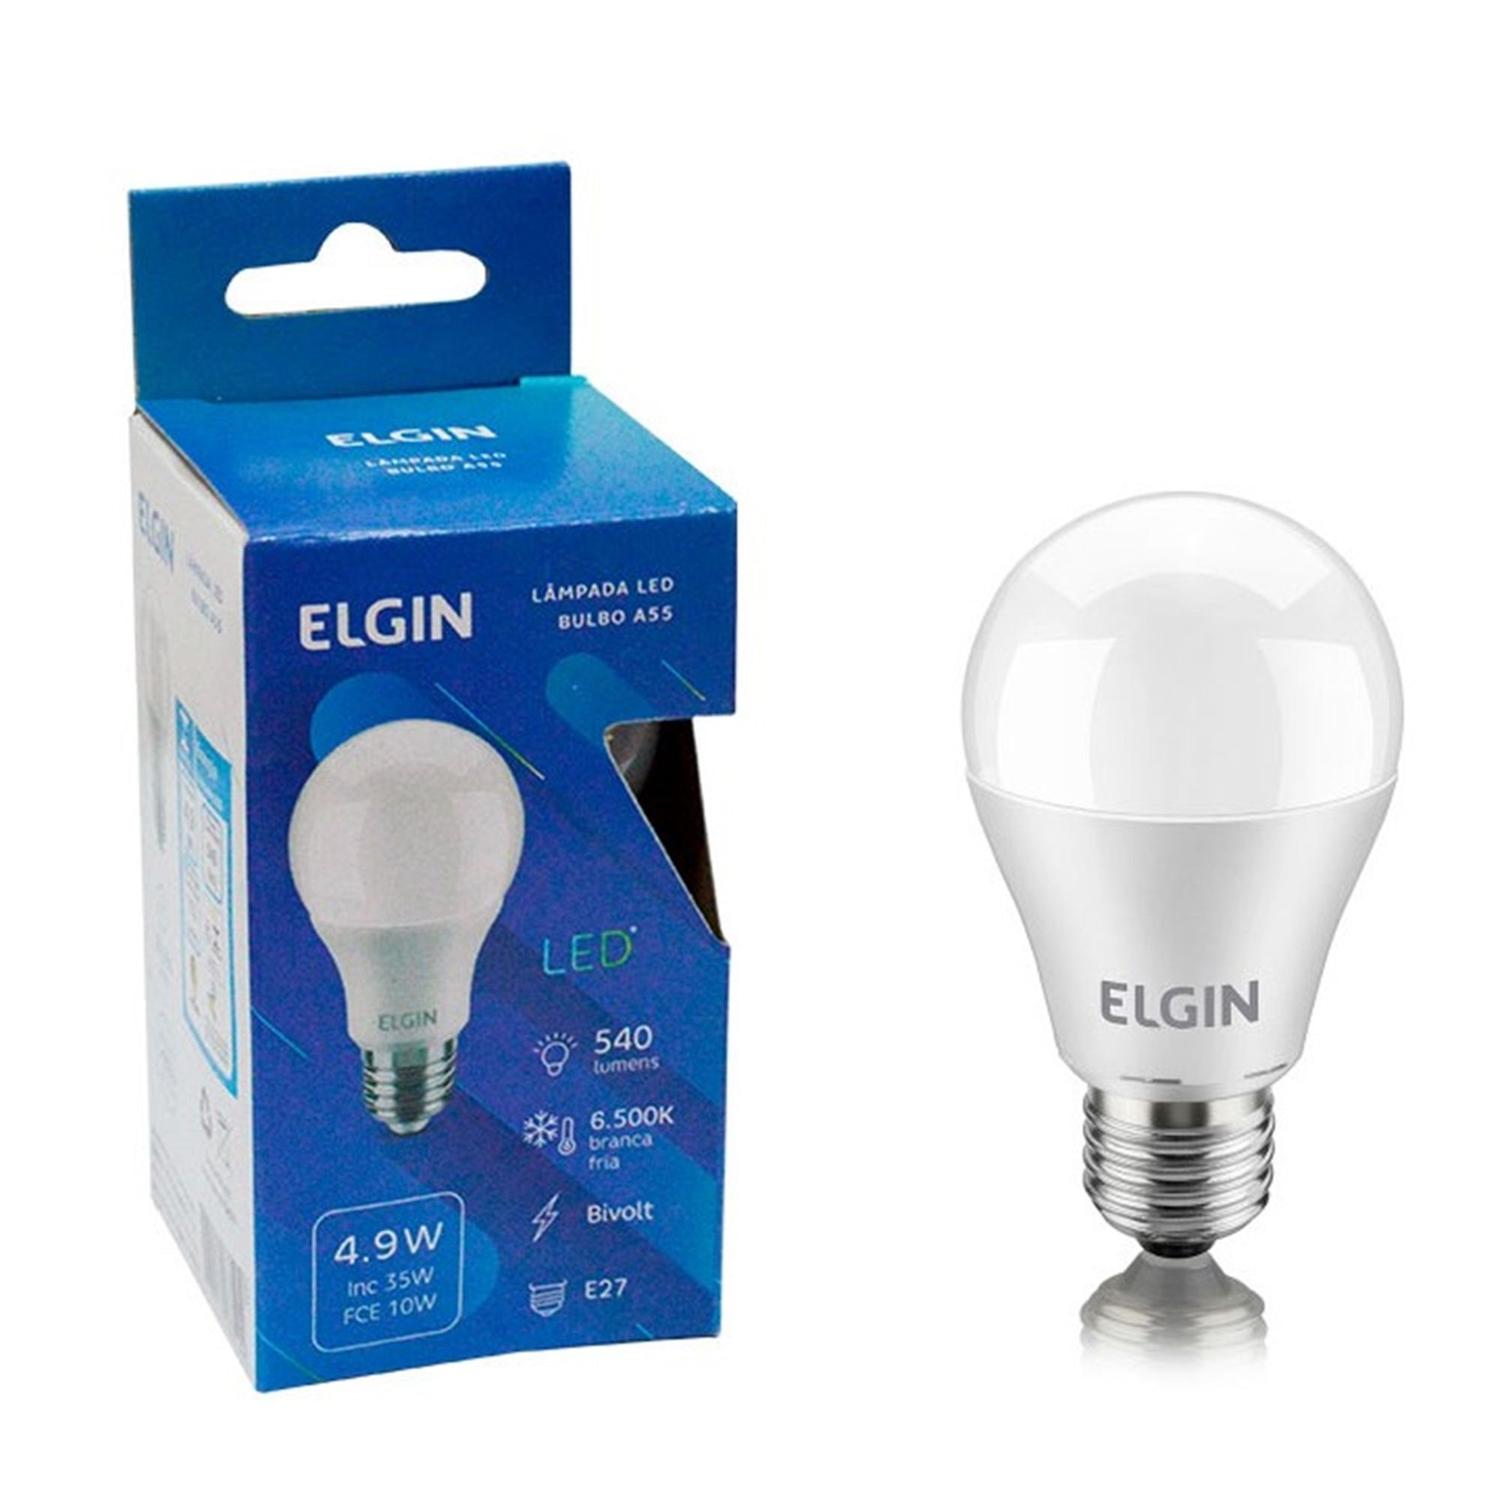 7897013586194 - LAMPADA ELGIN BULBO LED 4,9W